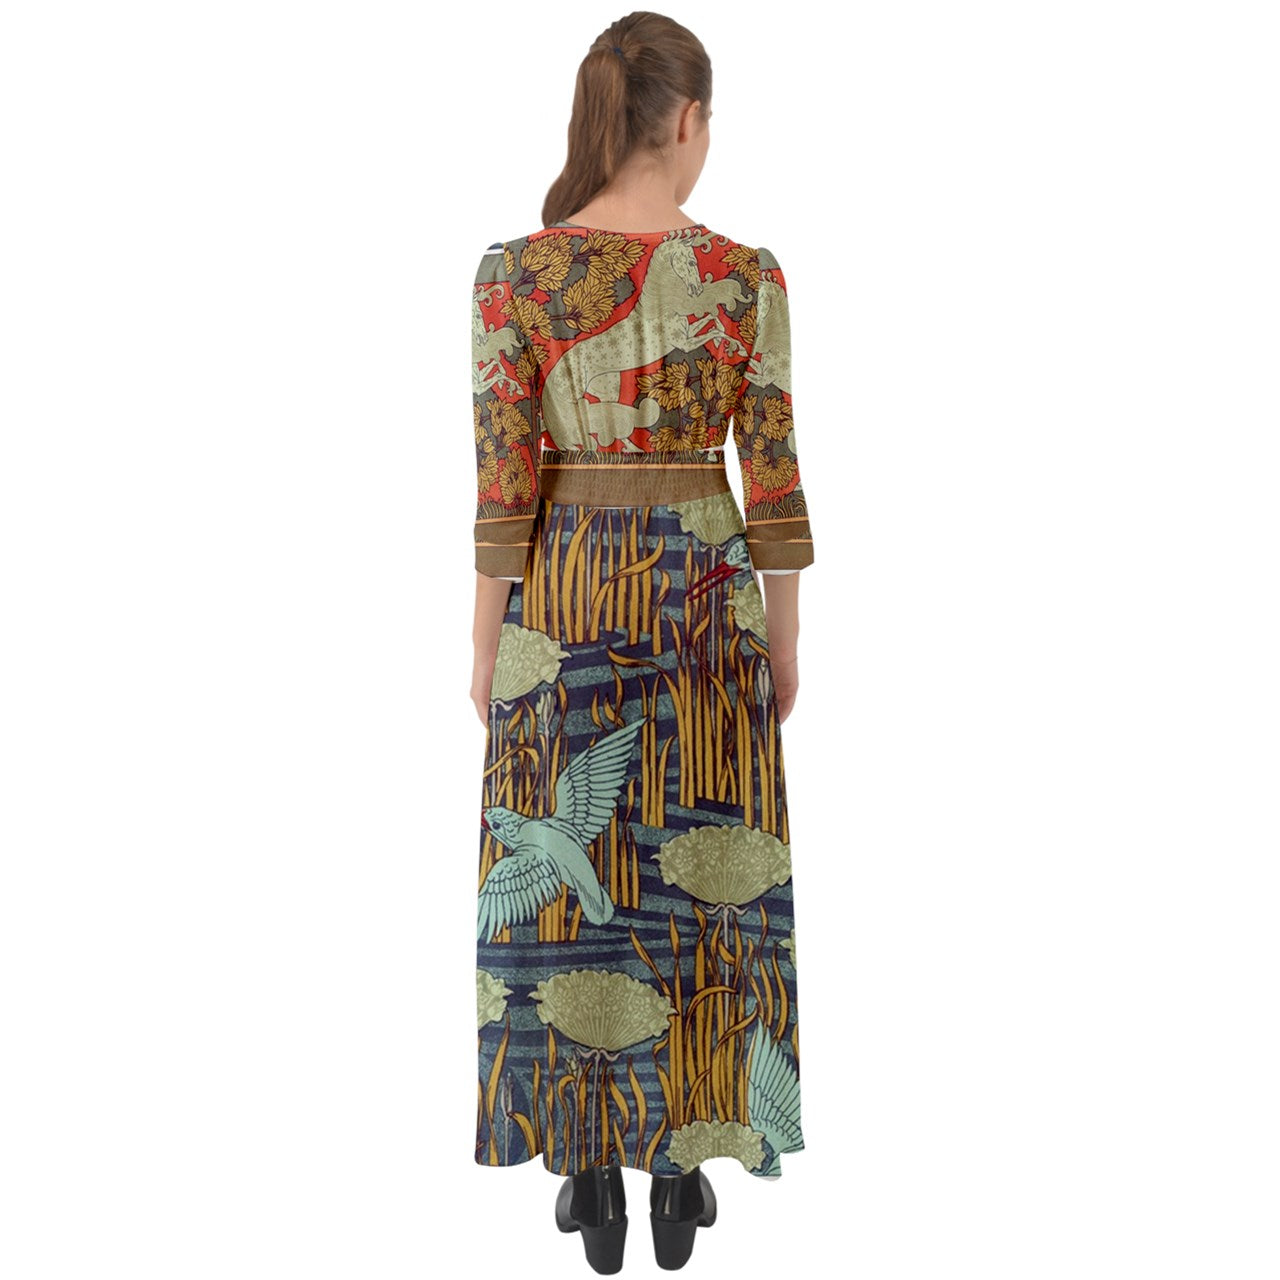 Art Nouveau Maxi Dress, Boho Chic, Horse & Hummingbird Design, Polyester, Button-Up, Lightweight